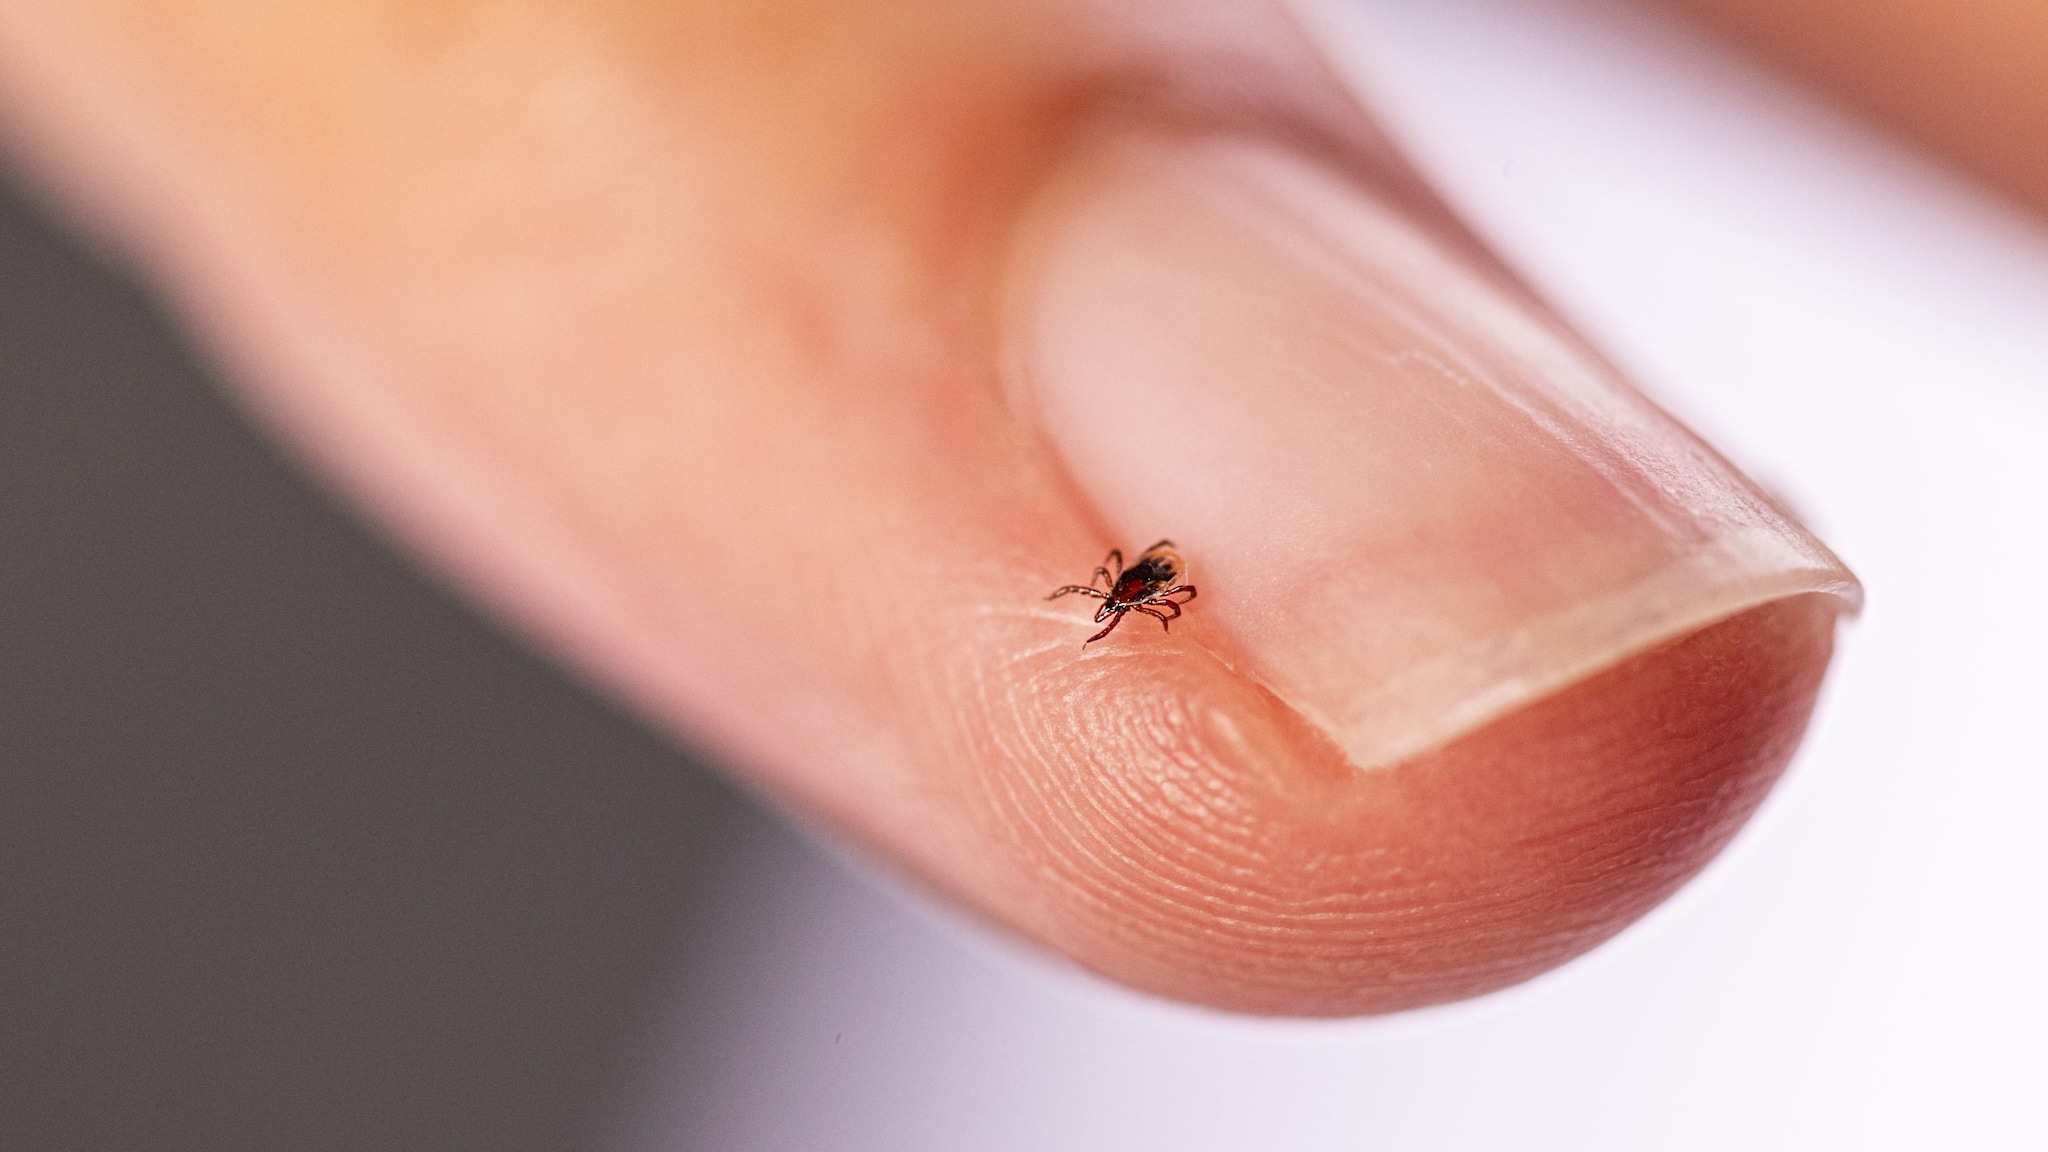 Blacklegged tick on a white fingernail